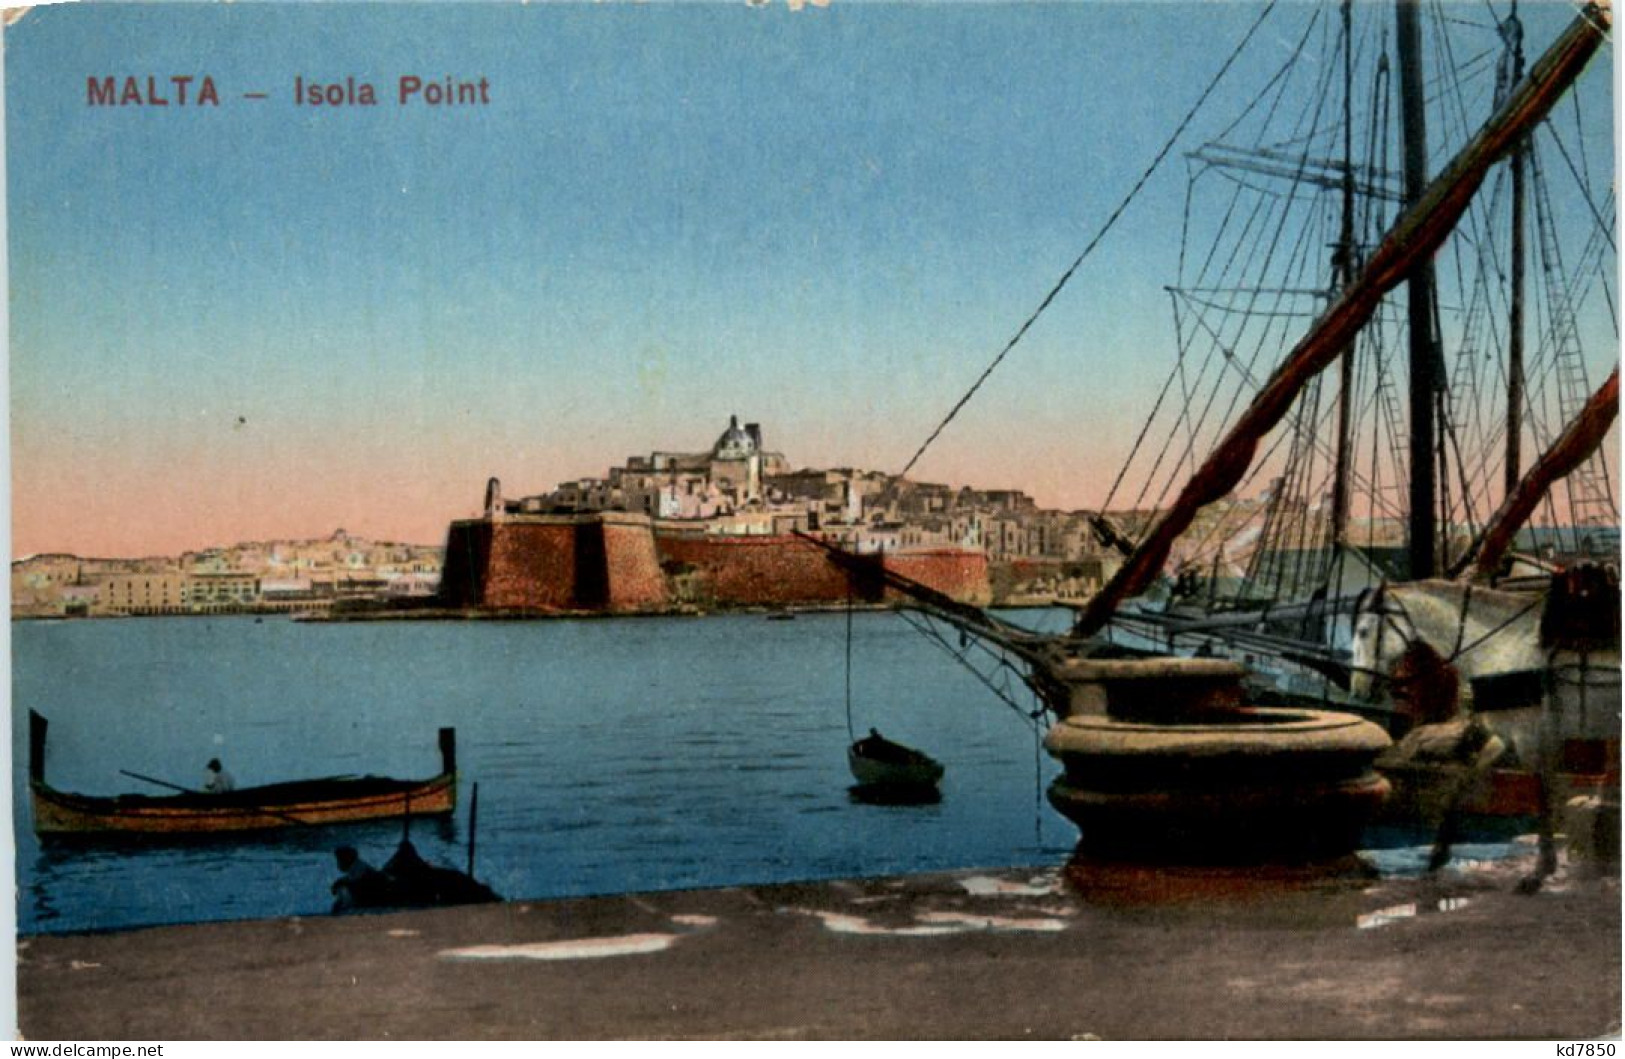 Malta - Isola Point - Malte